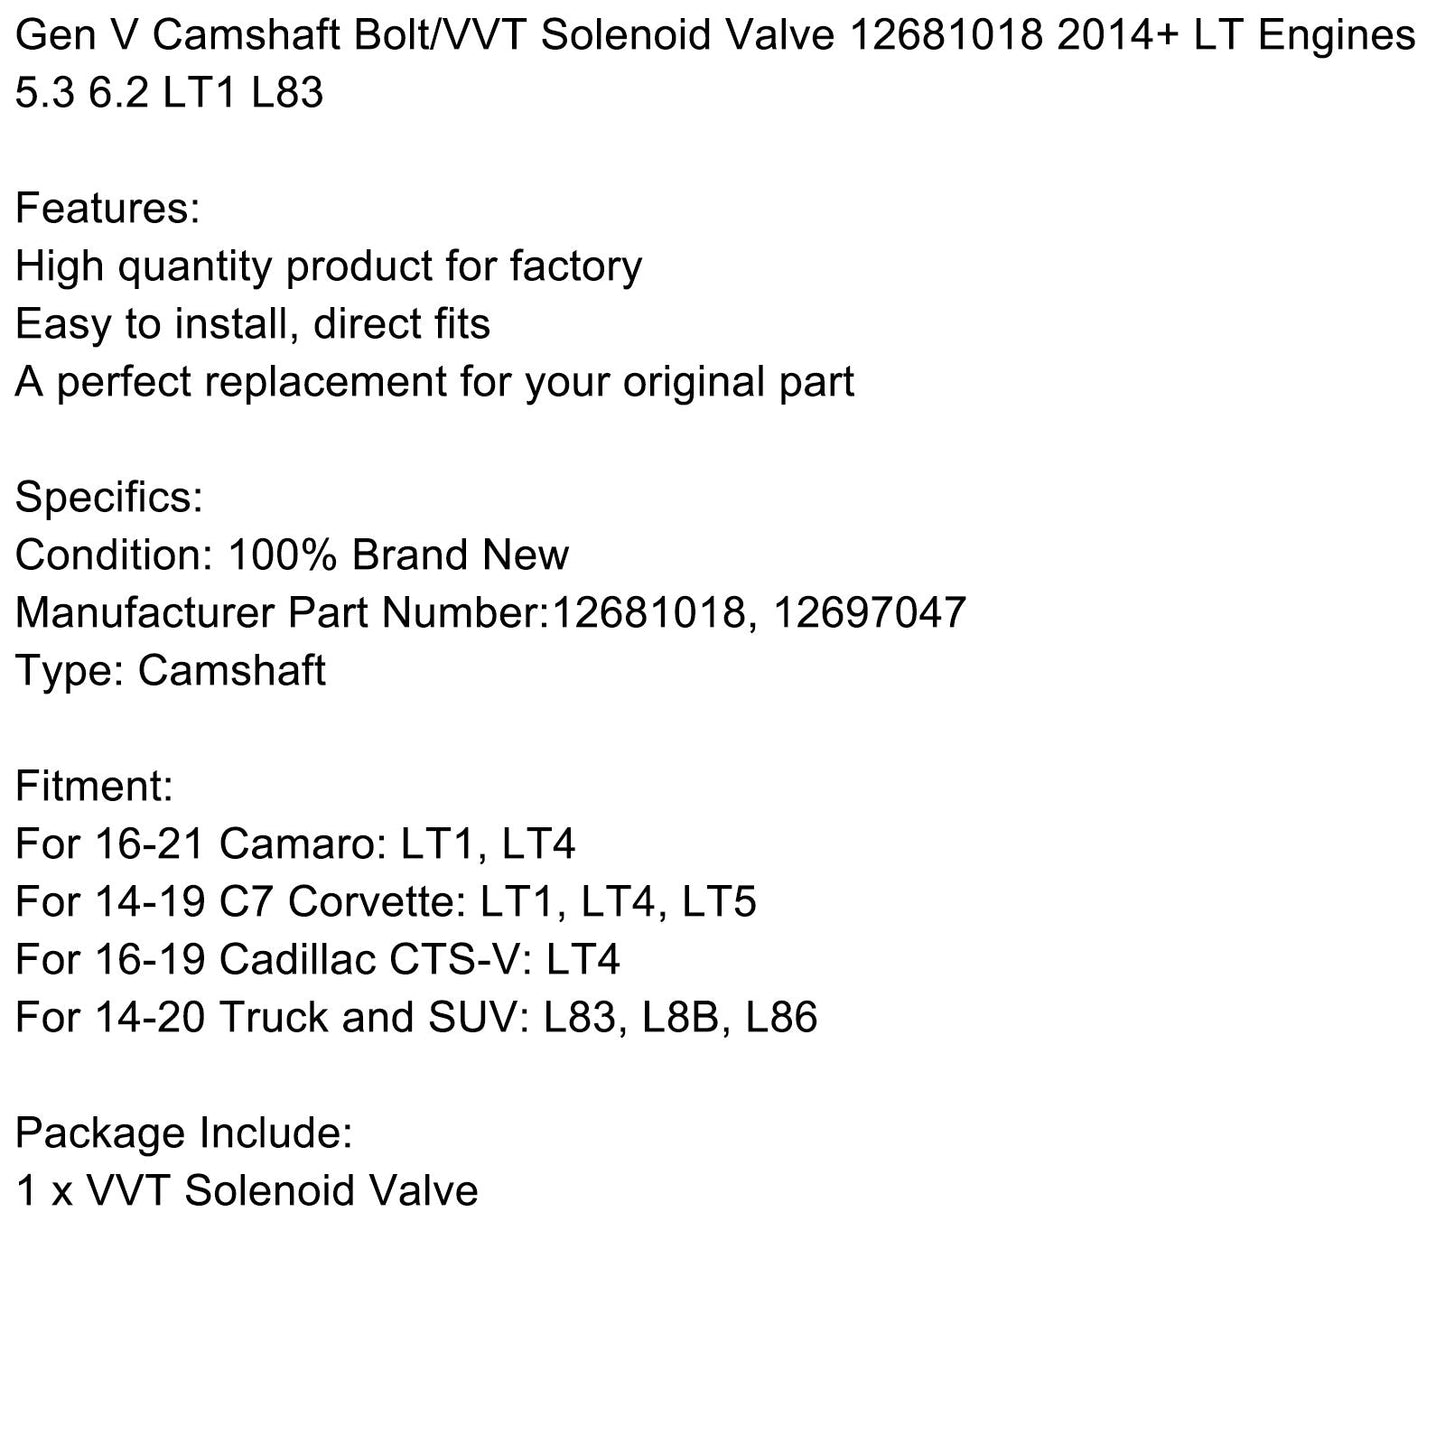 Gen V Camshaft Bolt/VVT Solenoid Valve 12681018 2014+ LT Engines 5.3 6.2 LT1 L83